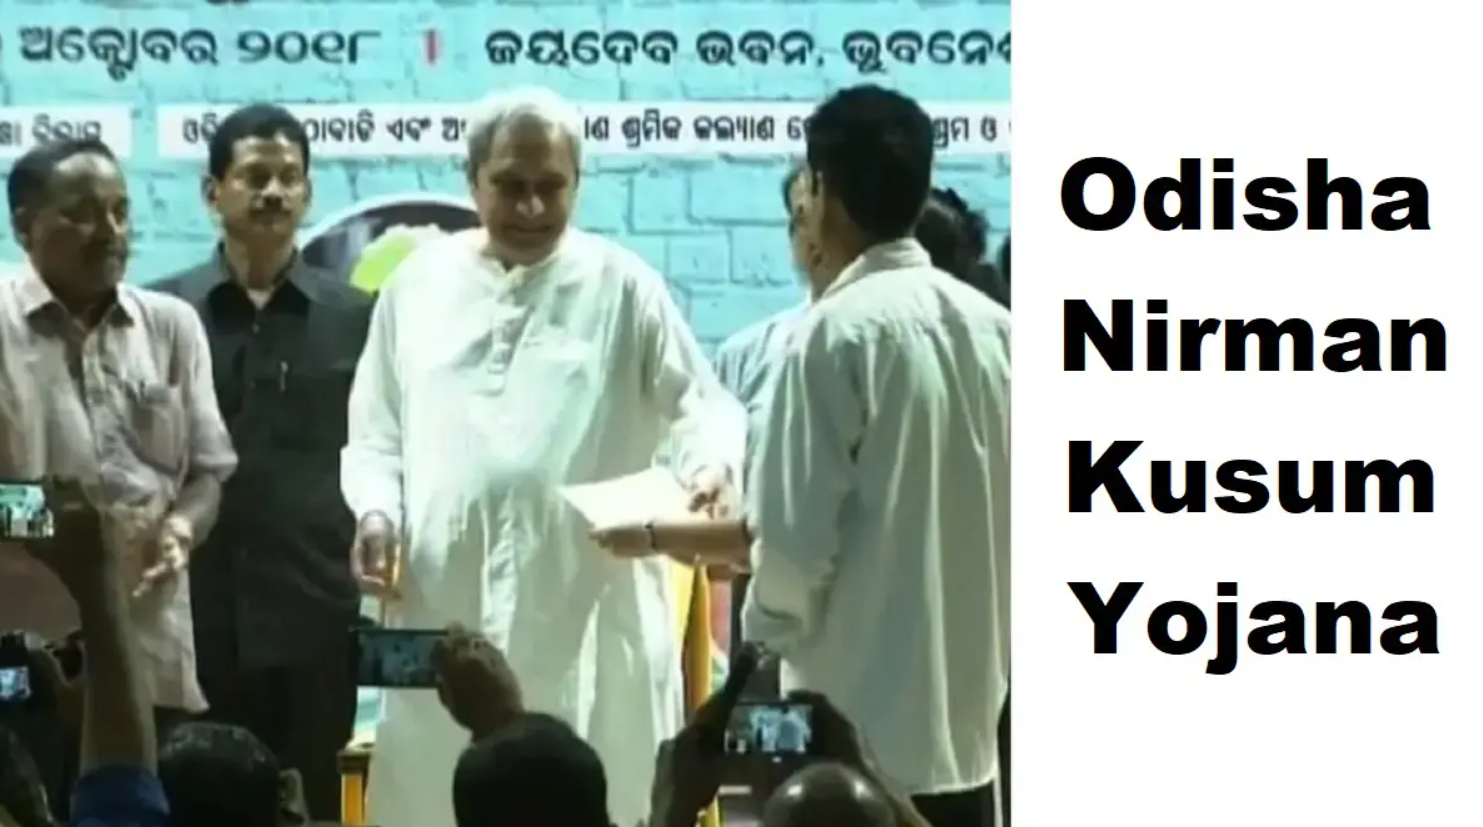 Odisha Nirman Kusum Yojana